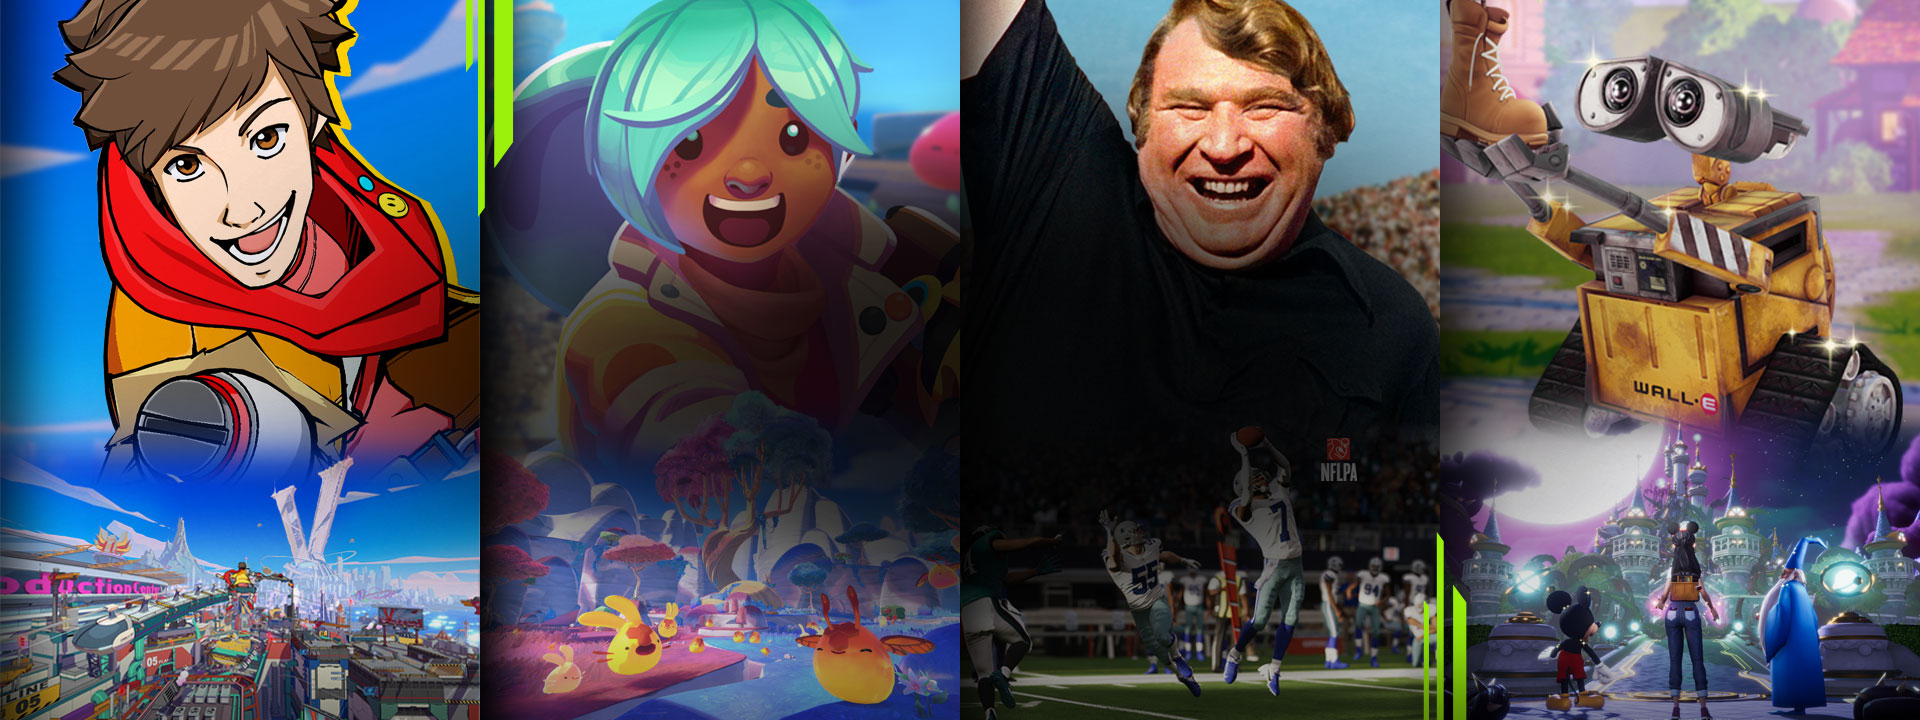 Διαλογή παιχνιδιών που είναι διαθέσιμα με το Xbox Game Pass, συμπεριλαμβανομένων των Hi-Fi RUSH, Slime Rancher 2, Madden NFL 23 και Disney Dreamlight Valley.